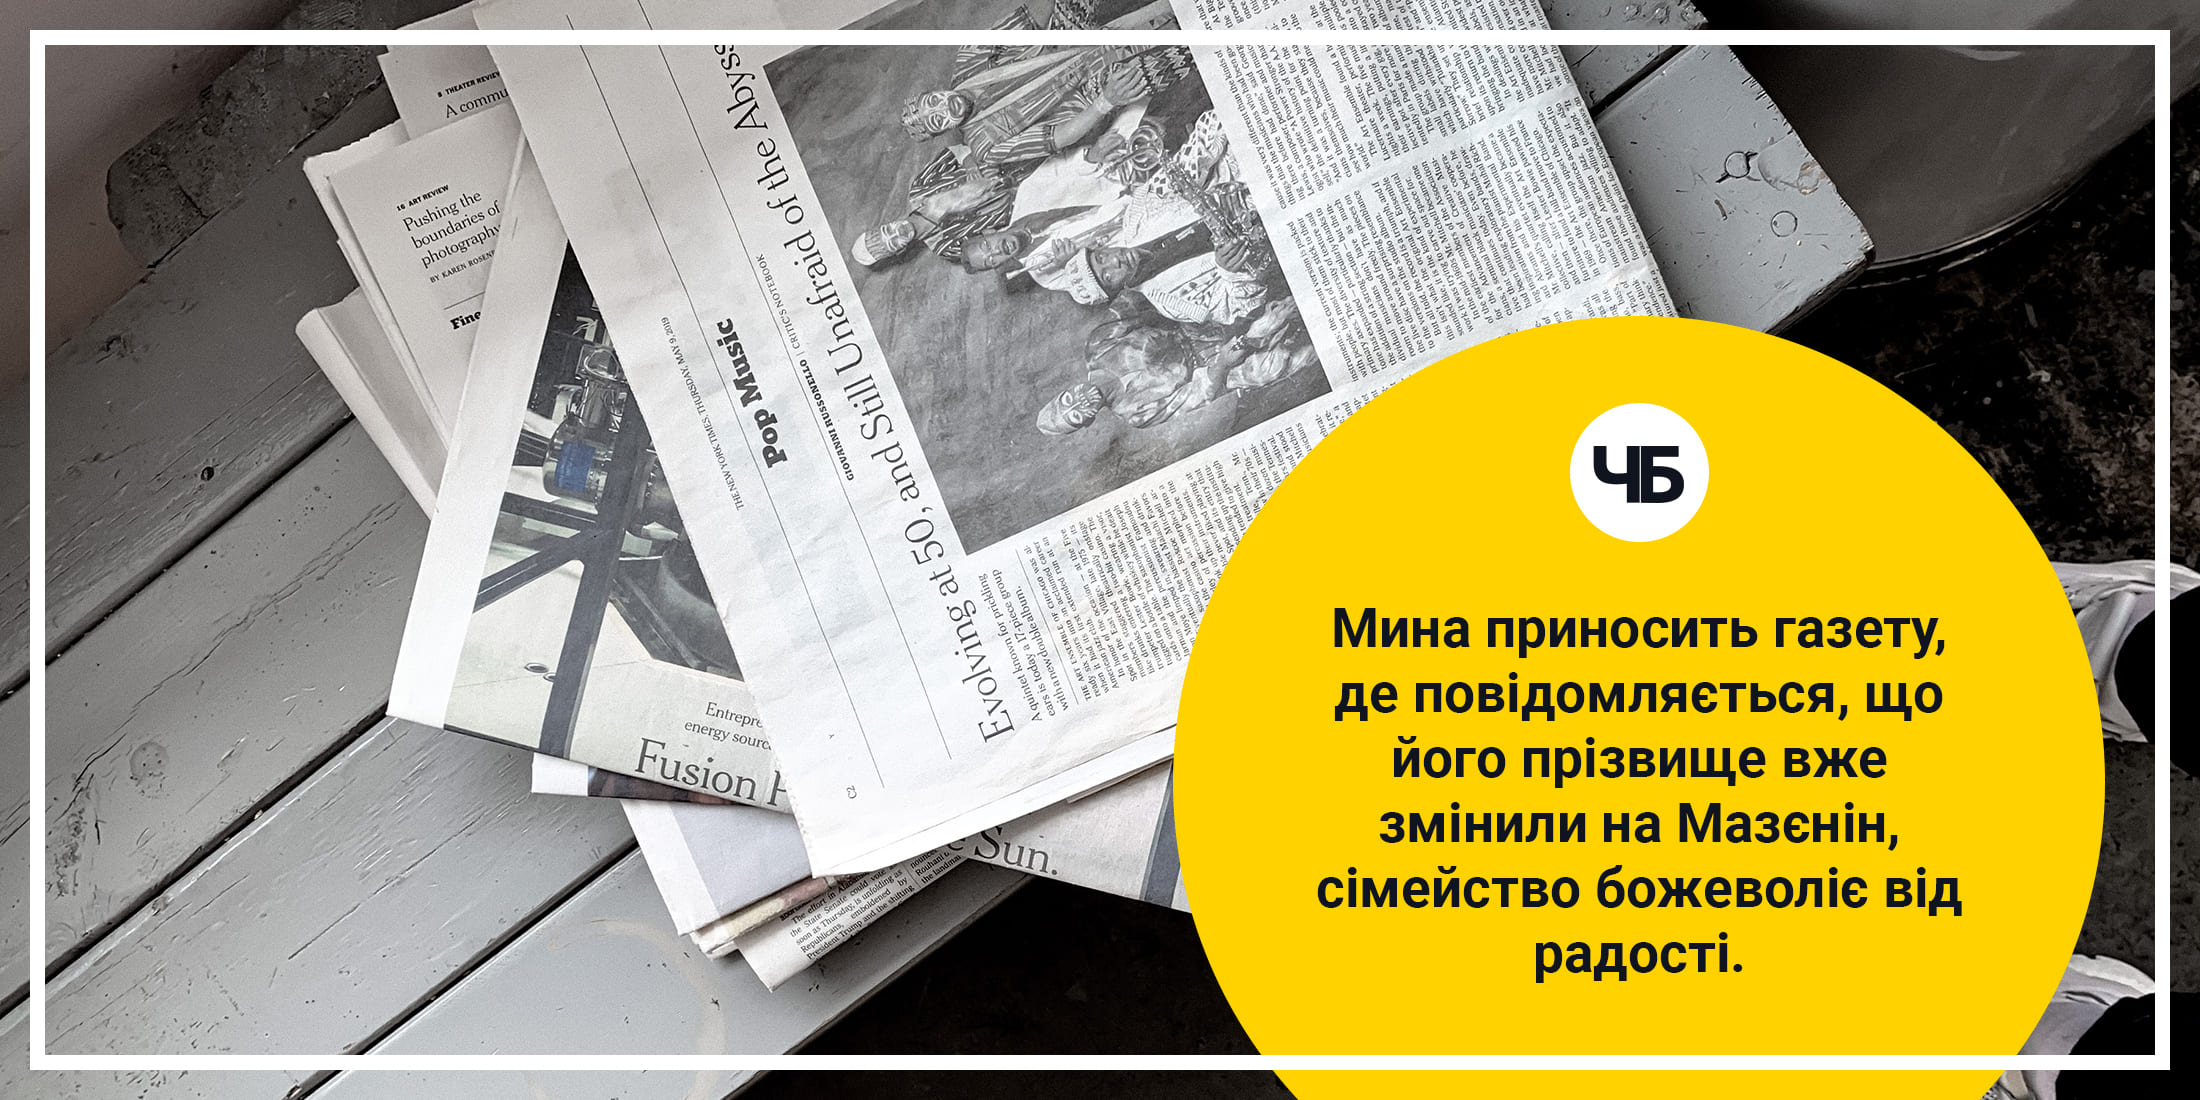 Мина приносить газету, де повідомляється, що його прізвище вже змінили на Мазєнін.